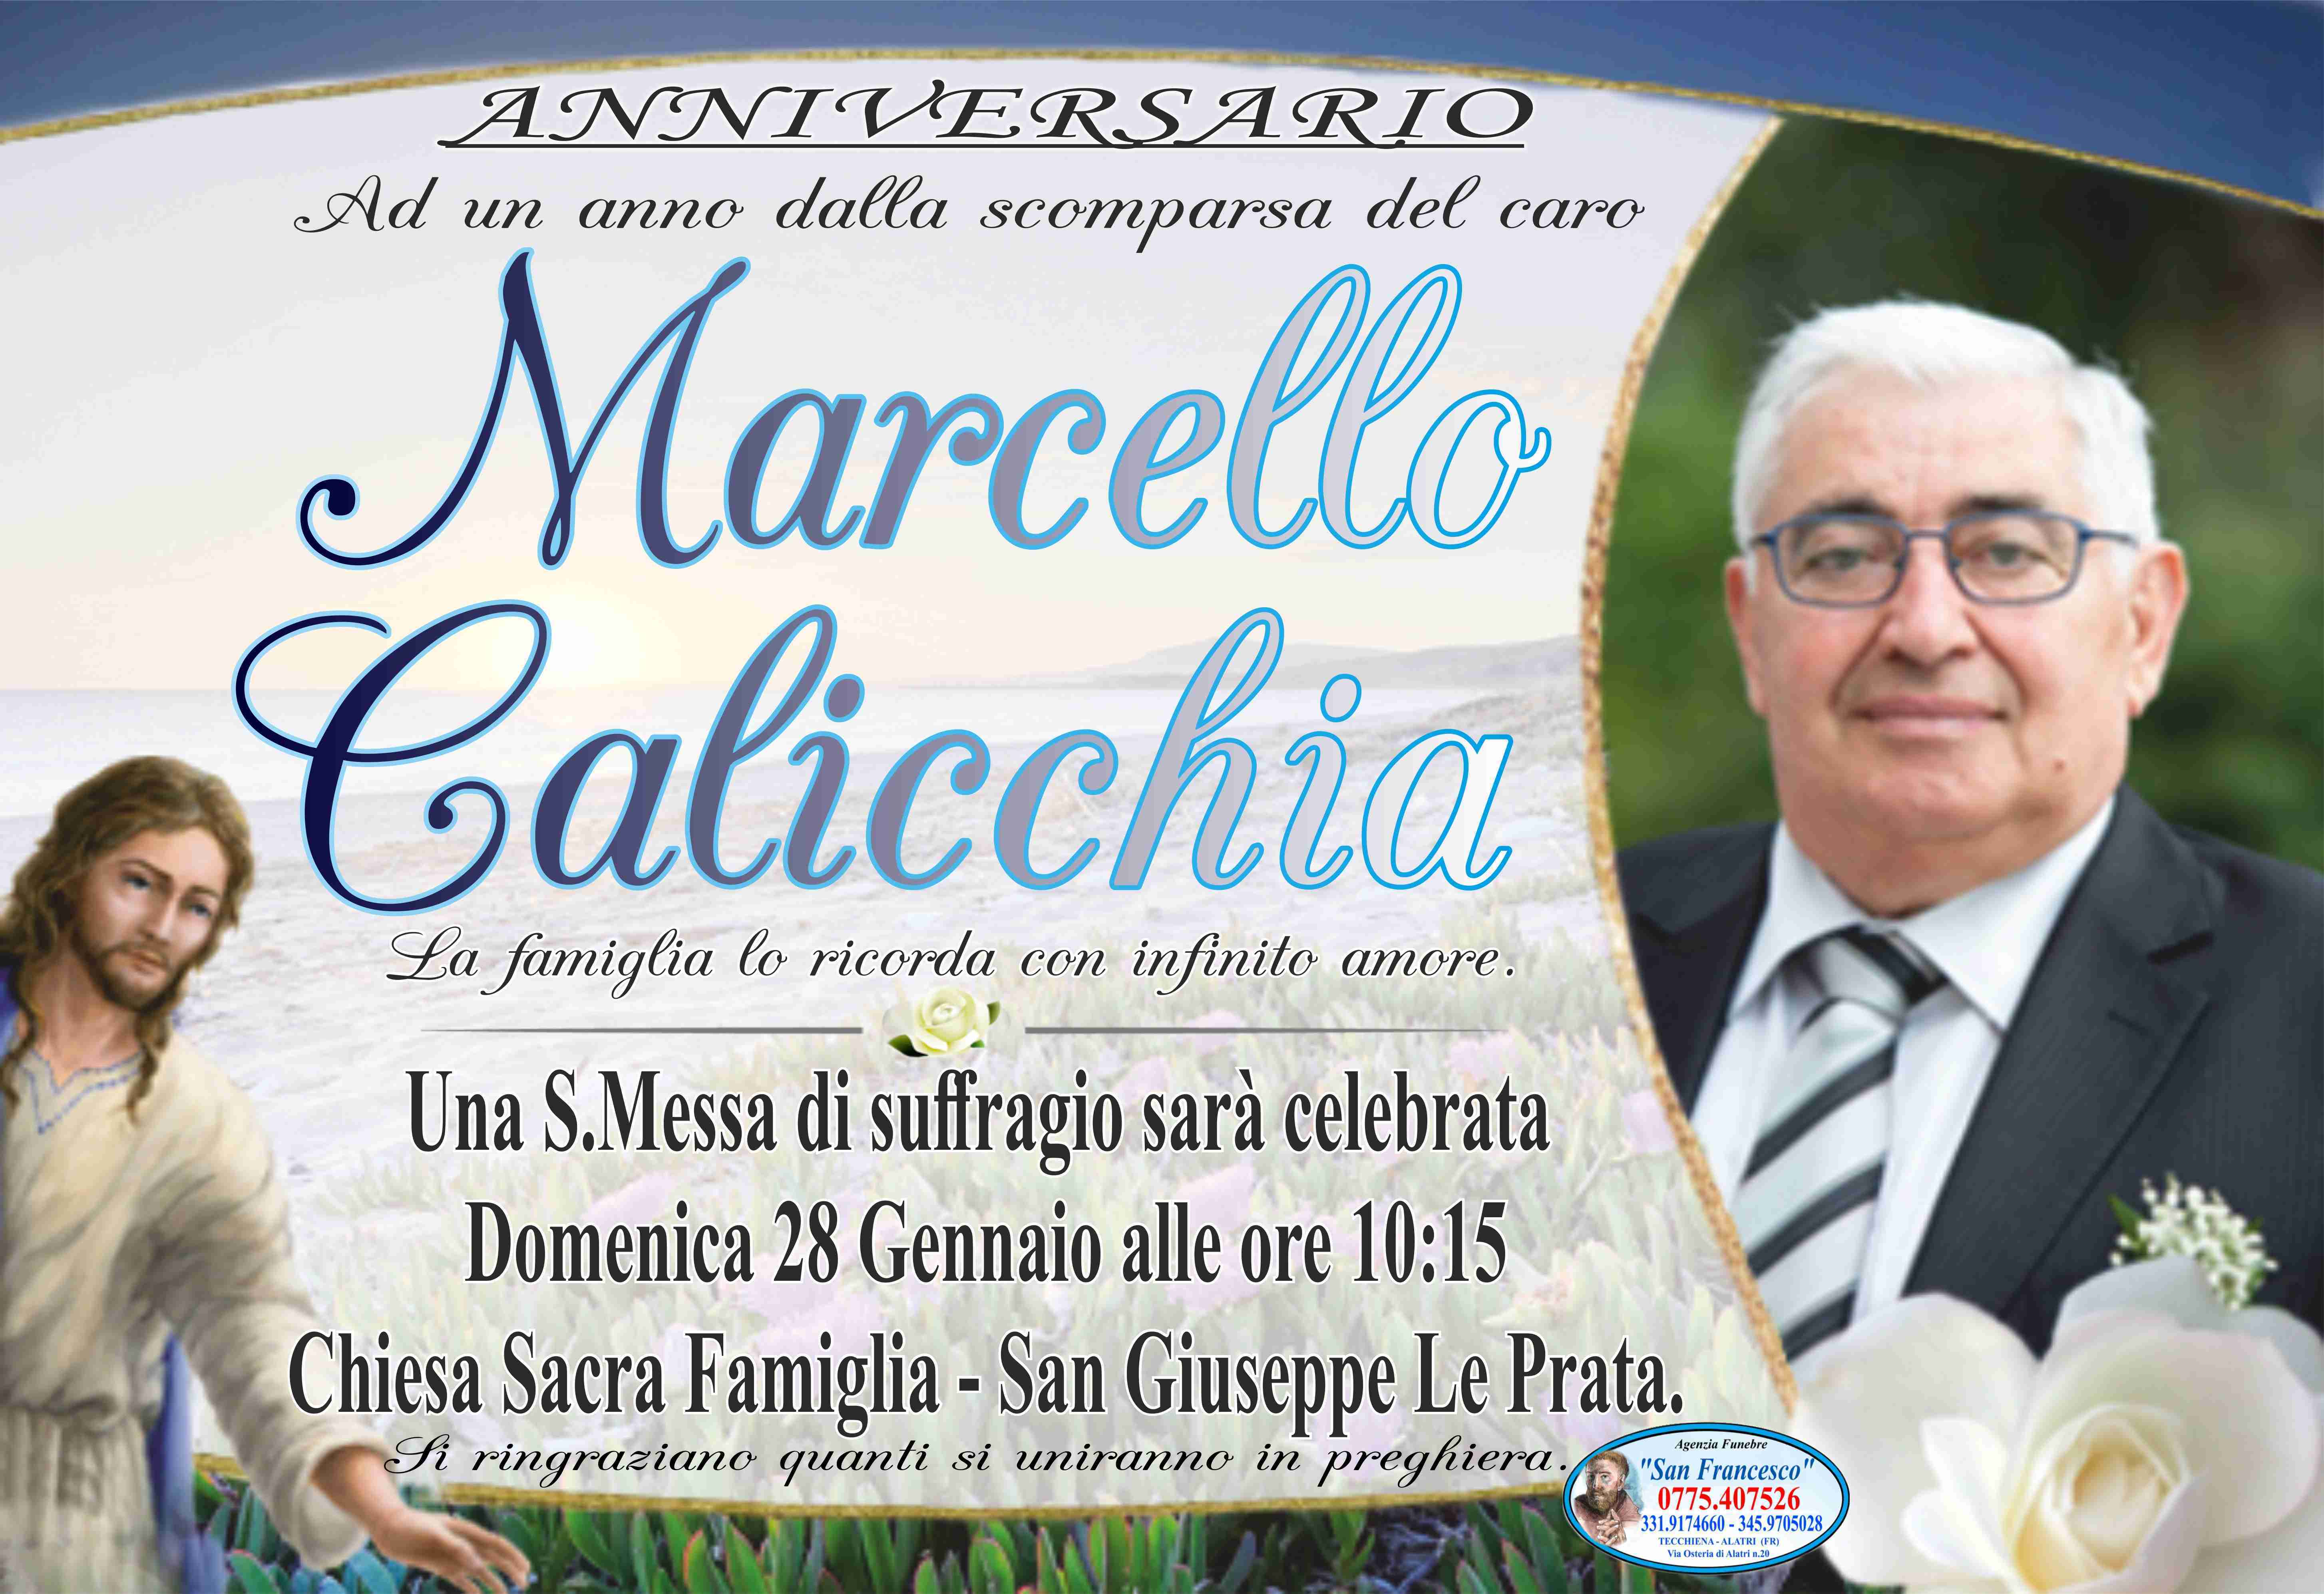 Marcello Calicchia